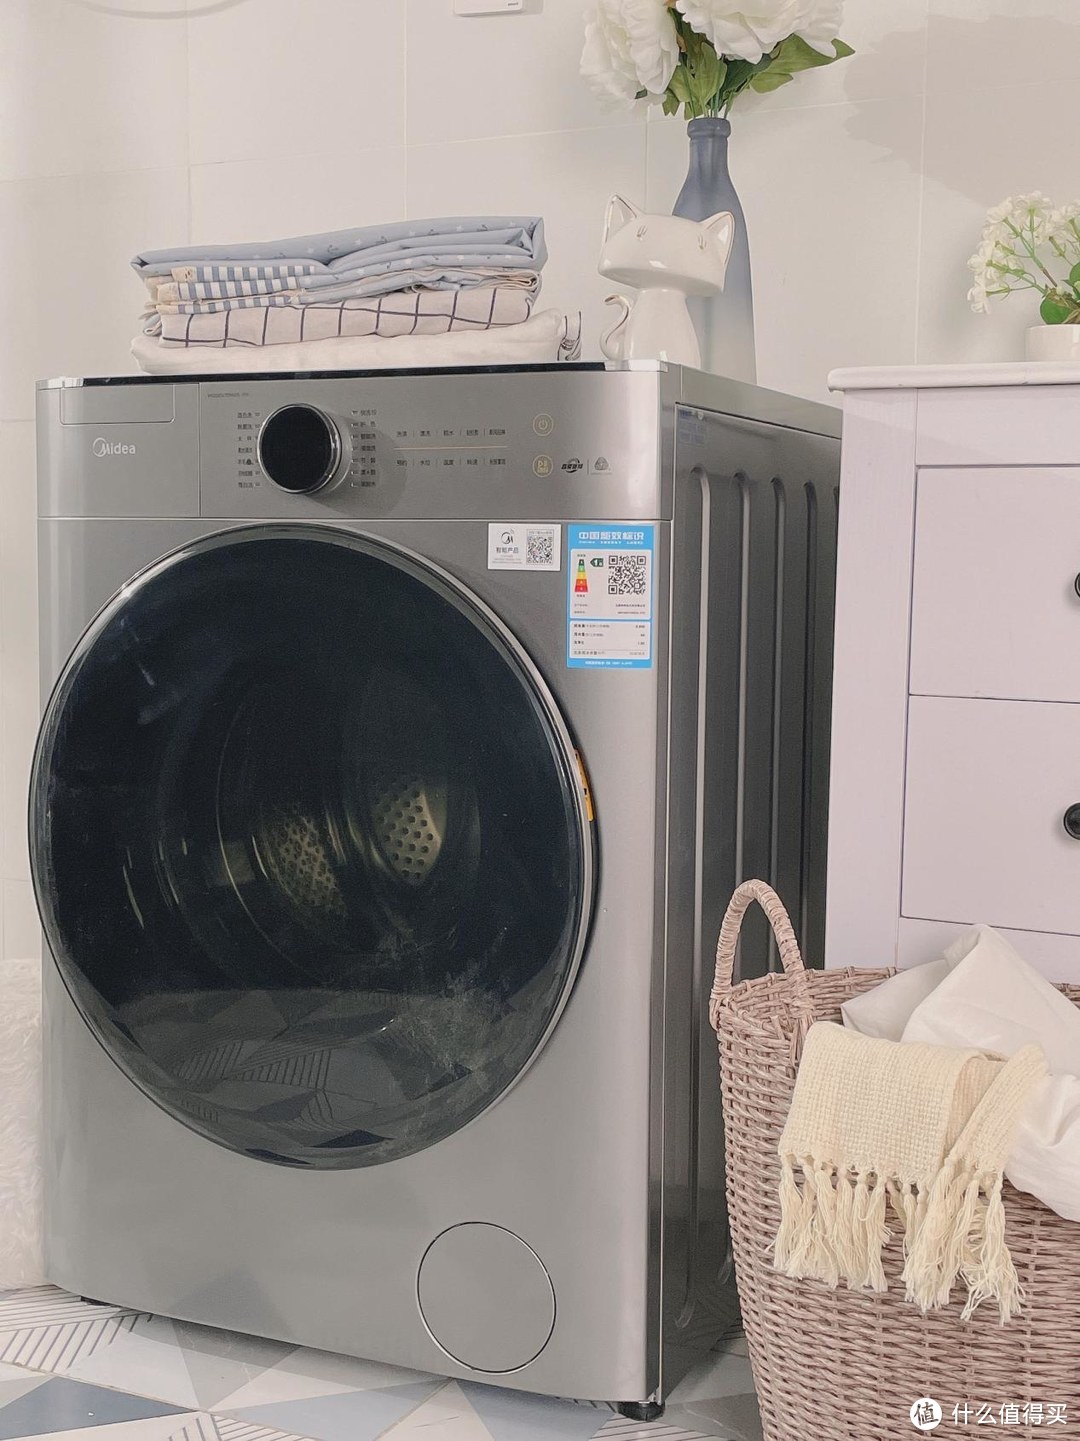 1014美的x小天鹅京东洗衣机超级品牌日篇四美的全自动直驱滚筒洗衣机